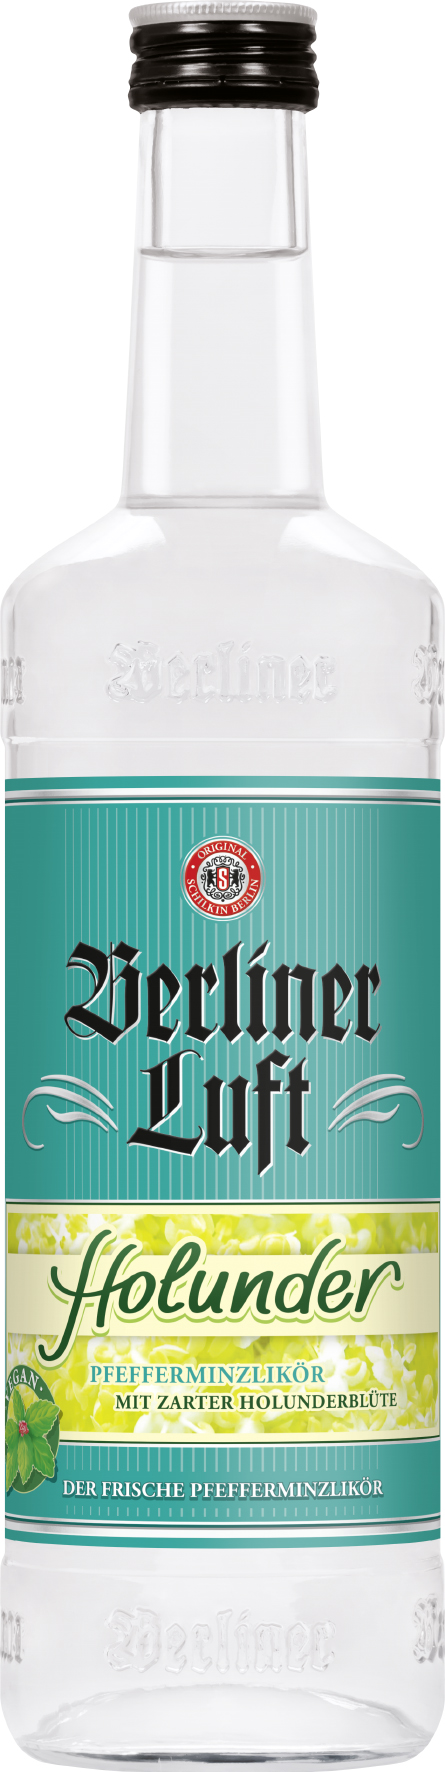 Berliner Luft - Holunder - 0,7l 18%vol.